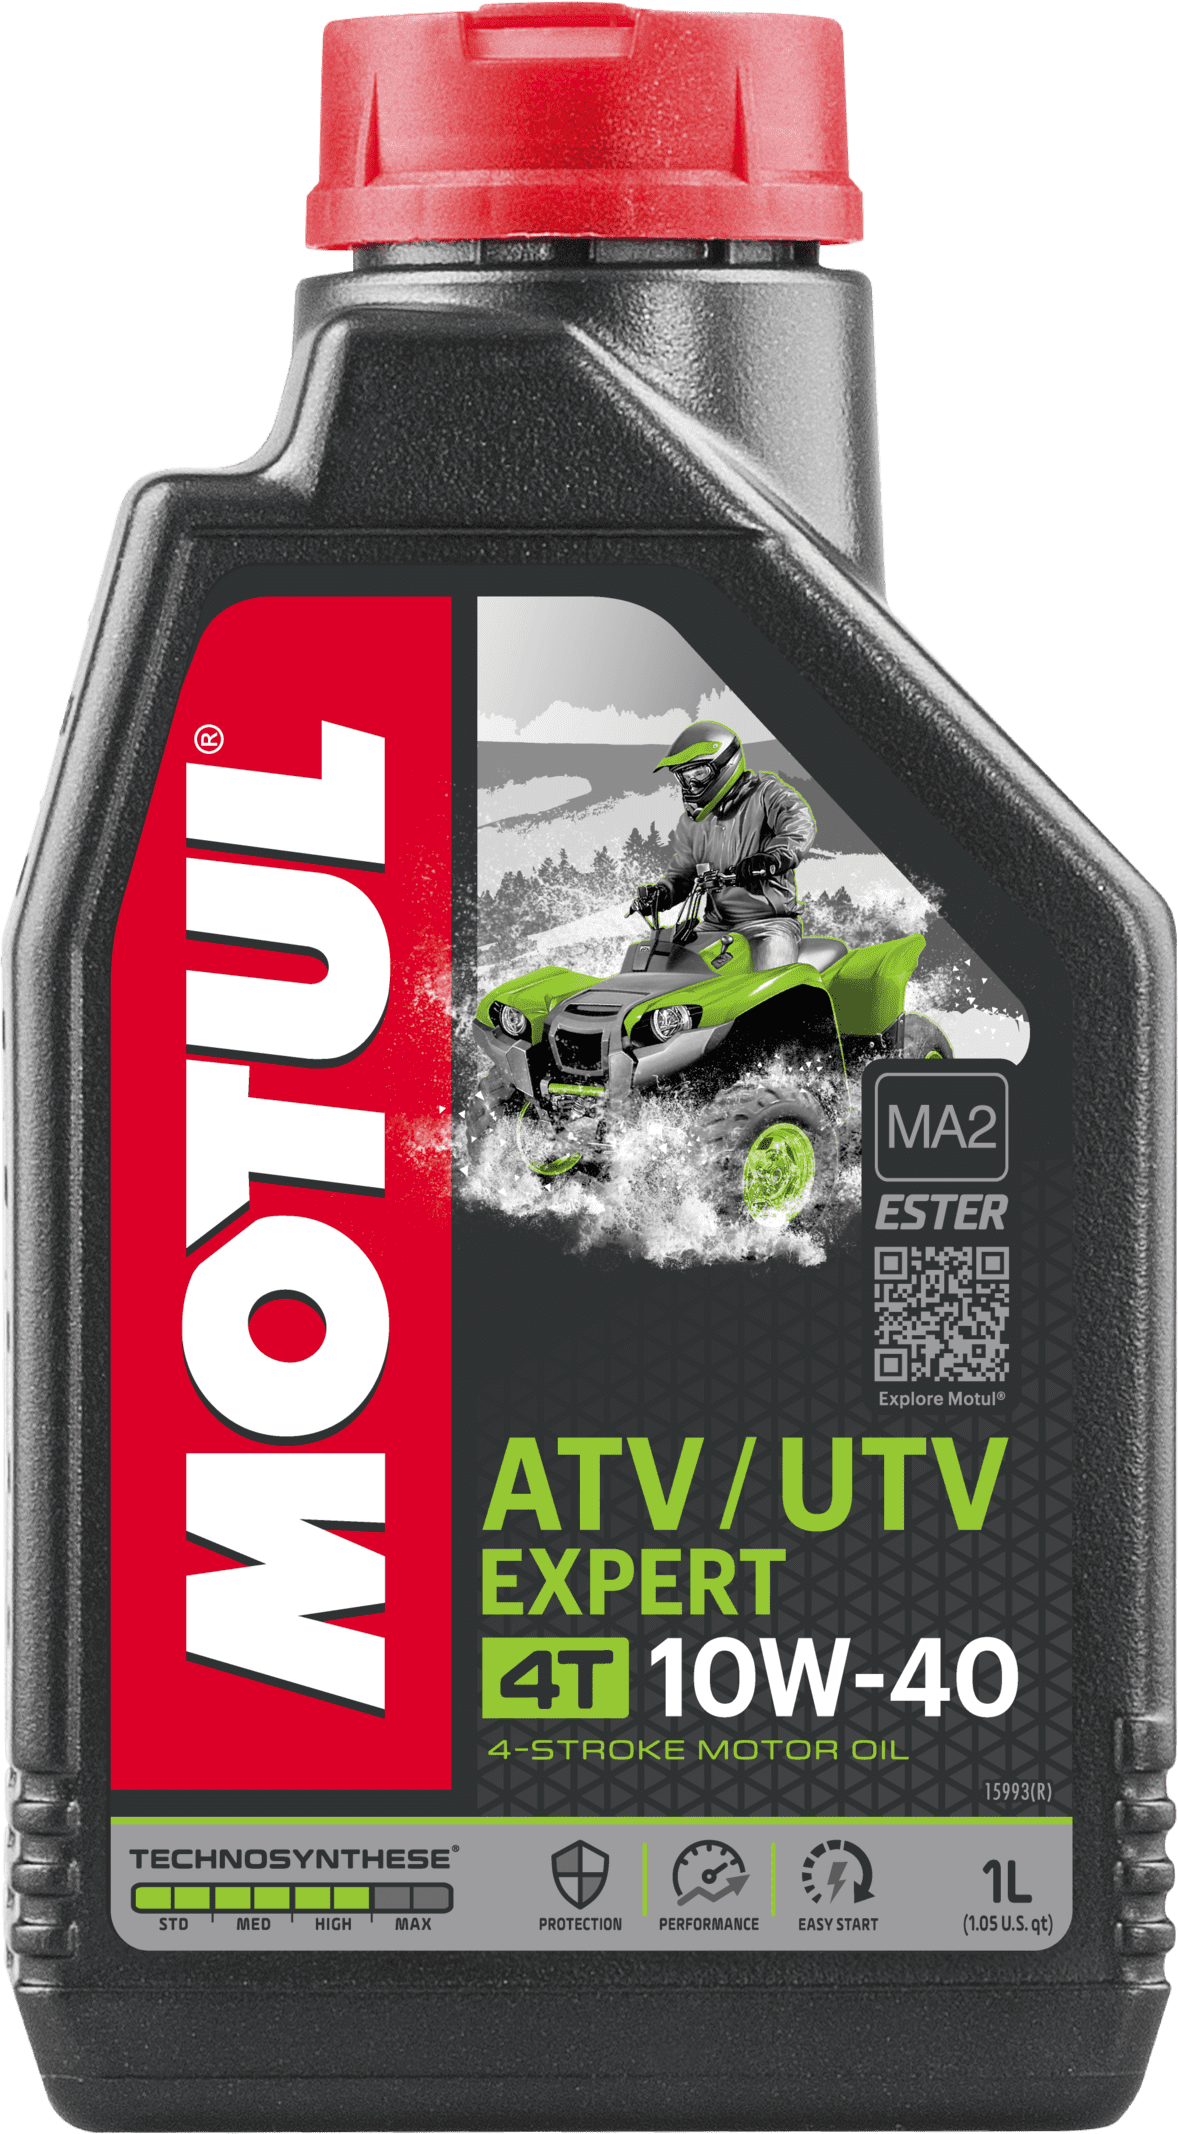 105938-1 4-takt motorolie op basis van Motul Technosynthese® - Ester speciaal ontwikkeld voor de nieuwste generatie 4-takt ATV's en UTV's voor zowel recreatieve als utilitaire activiteiten.